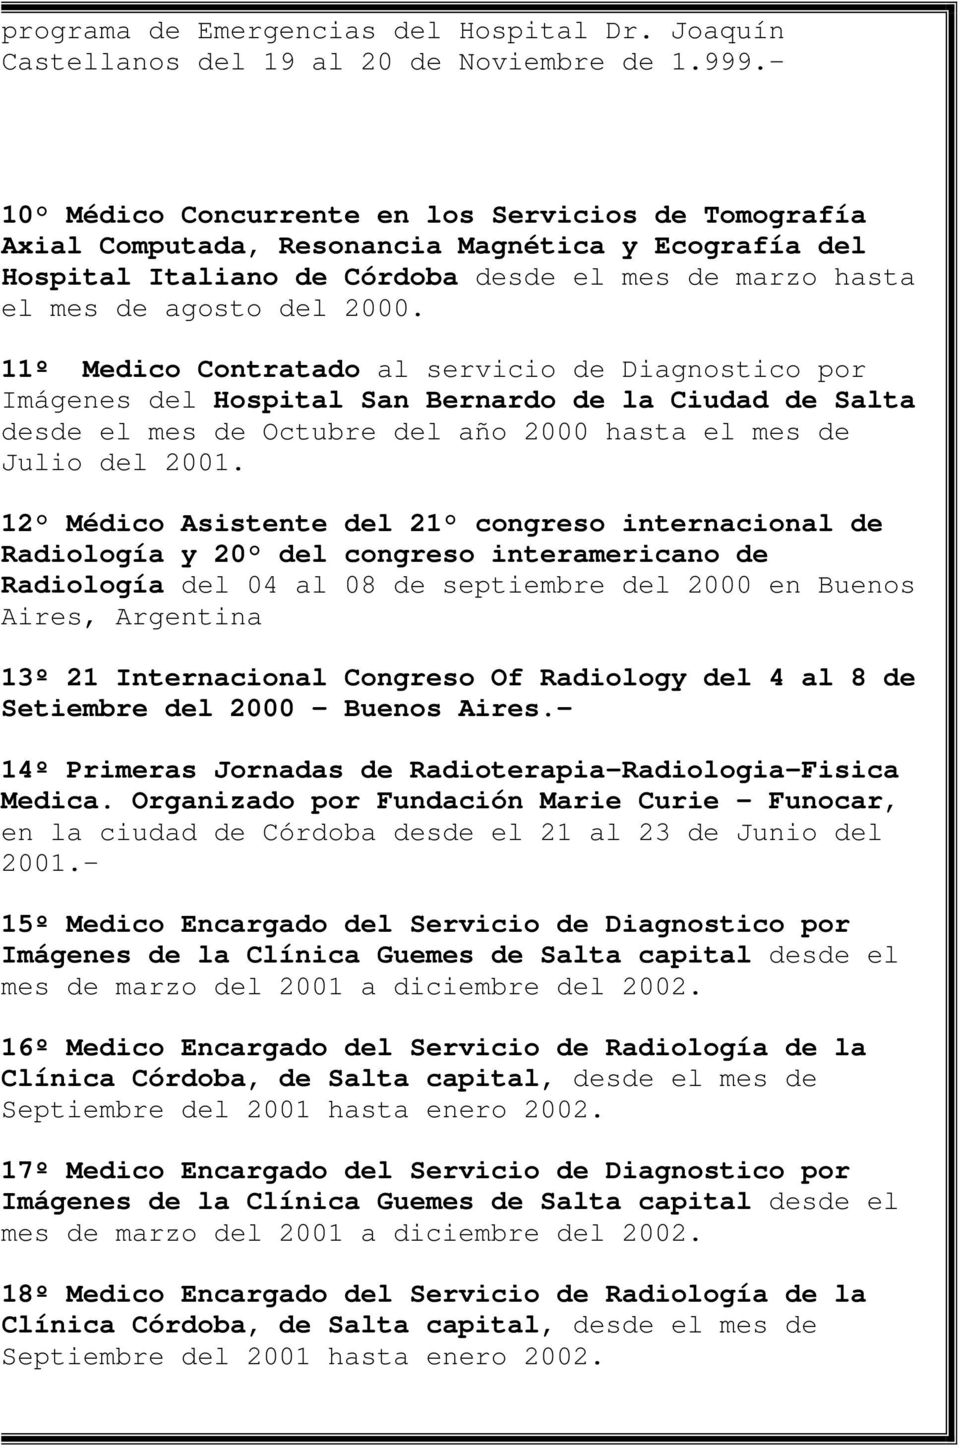 11º Medico Contratado al servicio de Diagnostico por Imágenes del Hospital San Bernardo de la Ciudad de Salta desde el mes de Octubre del año 2000 hasta el mes de Julio del 2001.